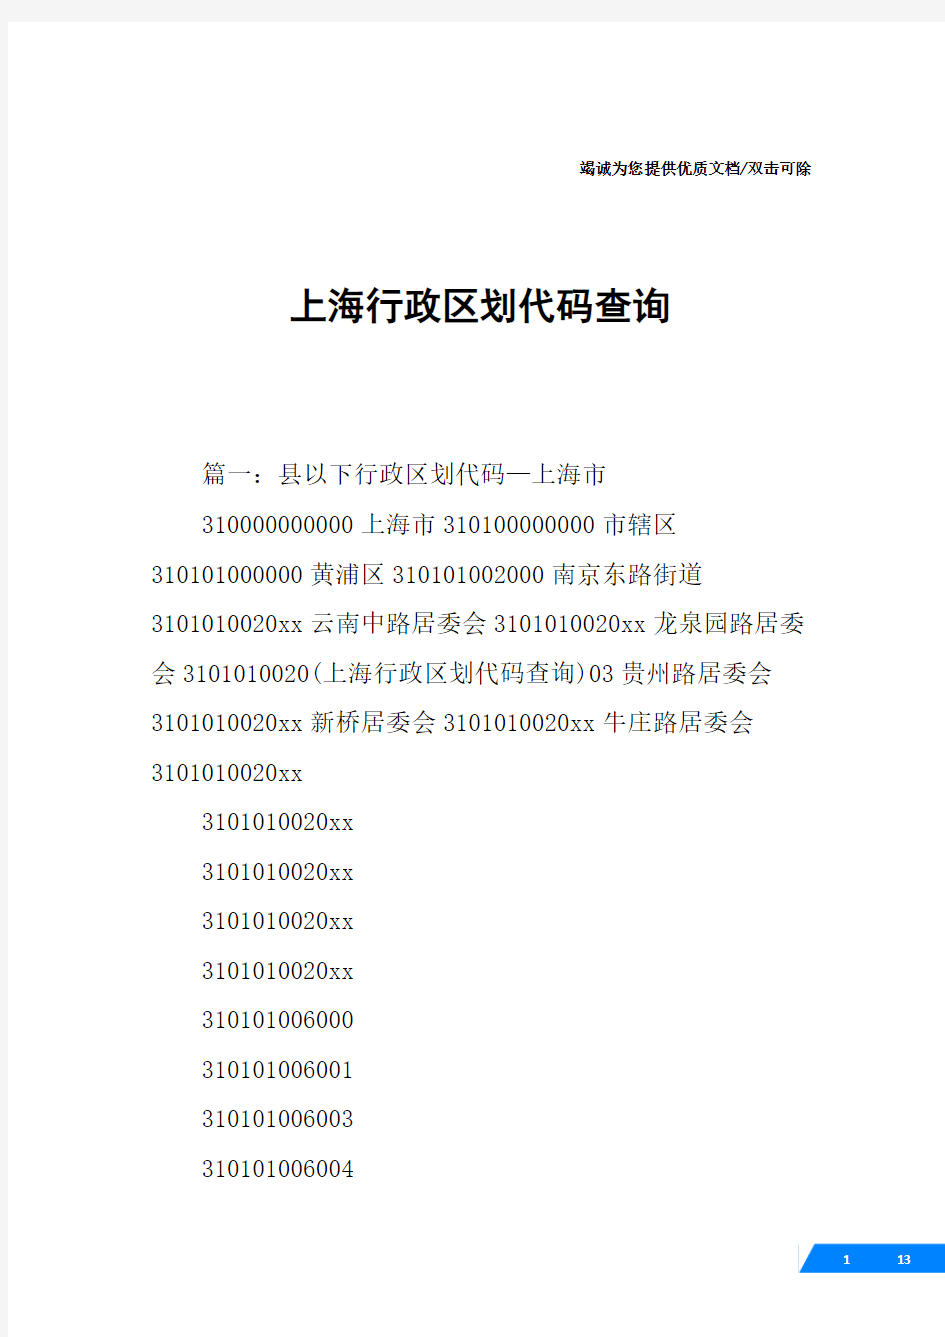 上海行政区划代码查询